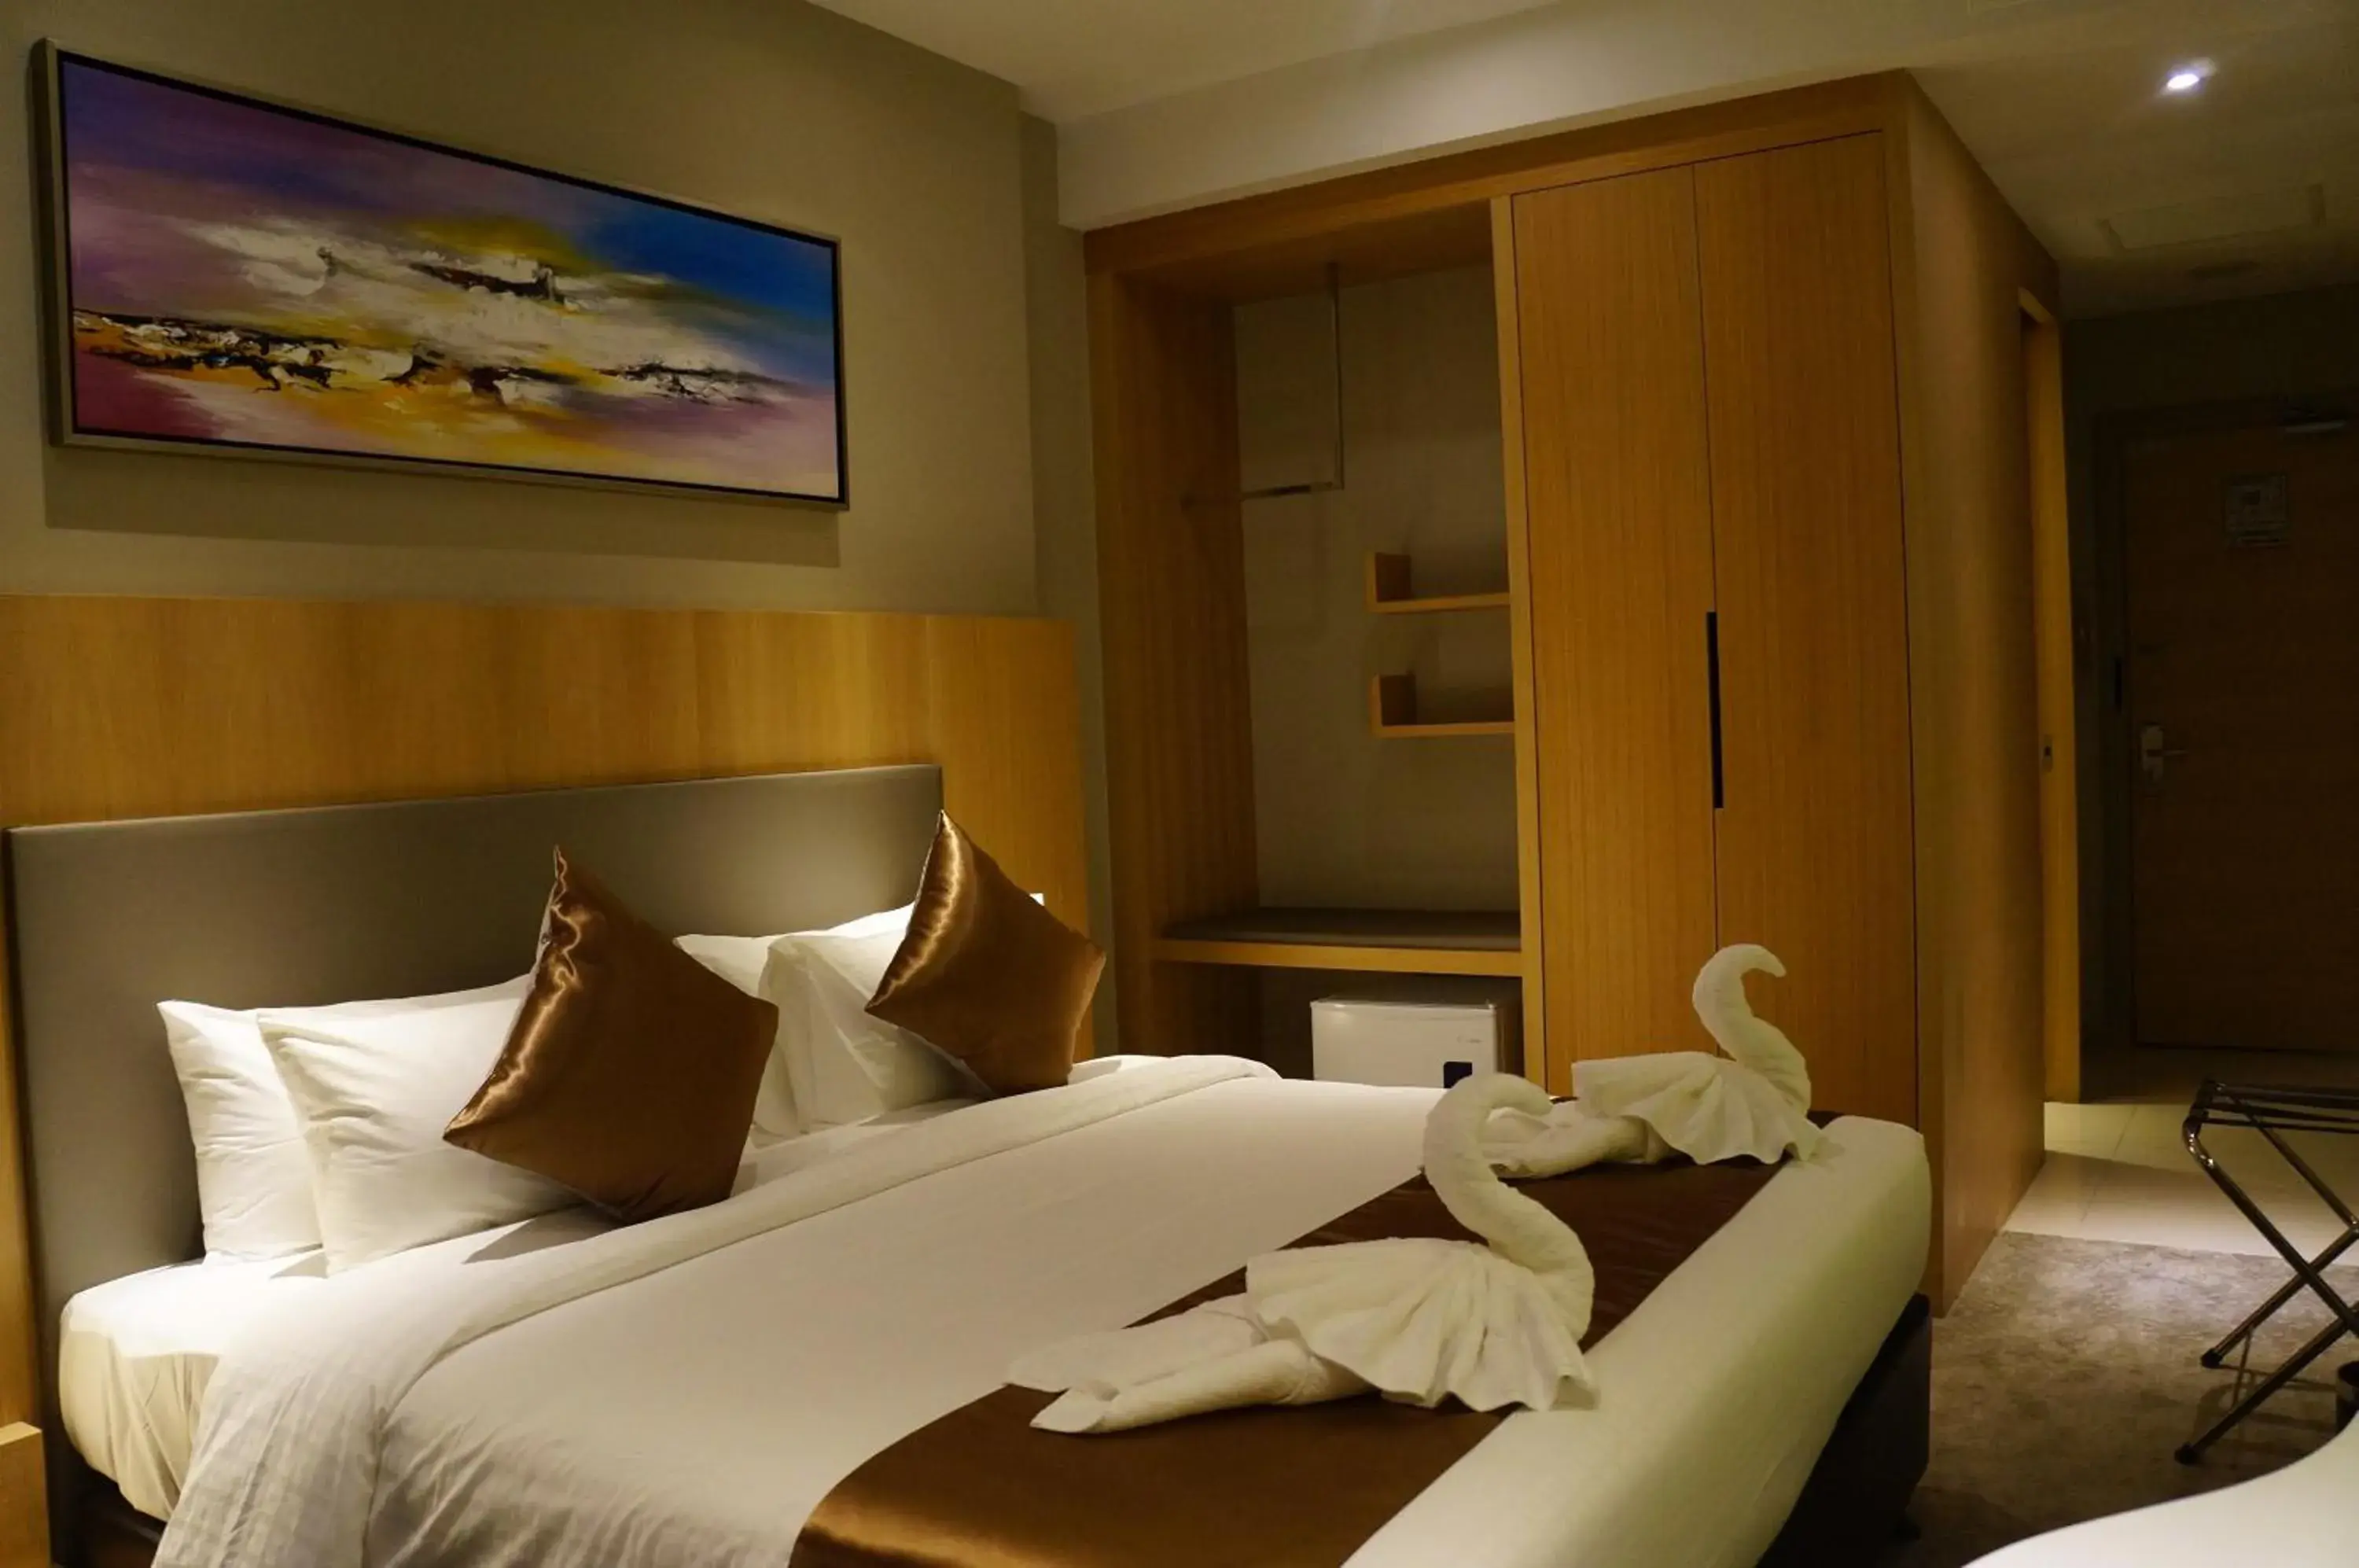 Bedroom, Room Photo in Greens Hotel & Suites